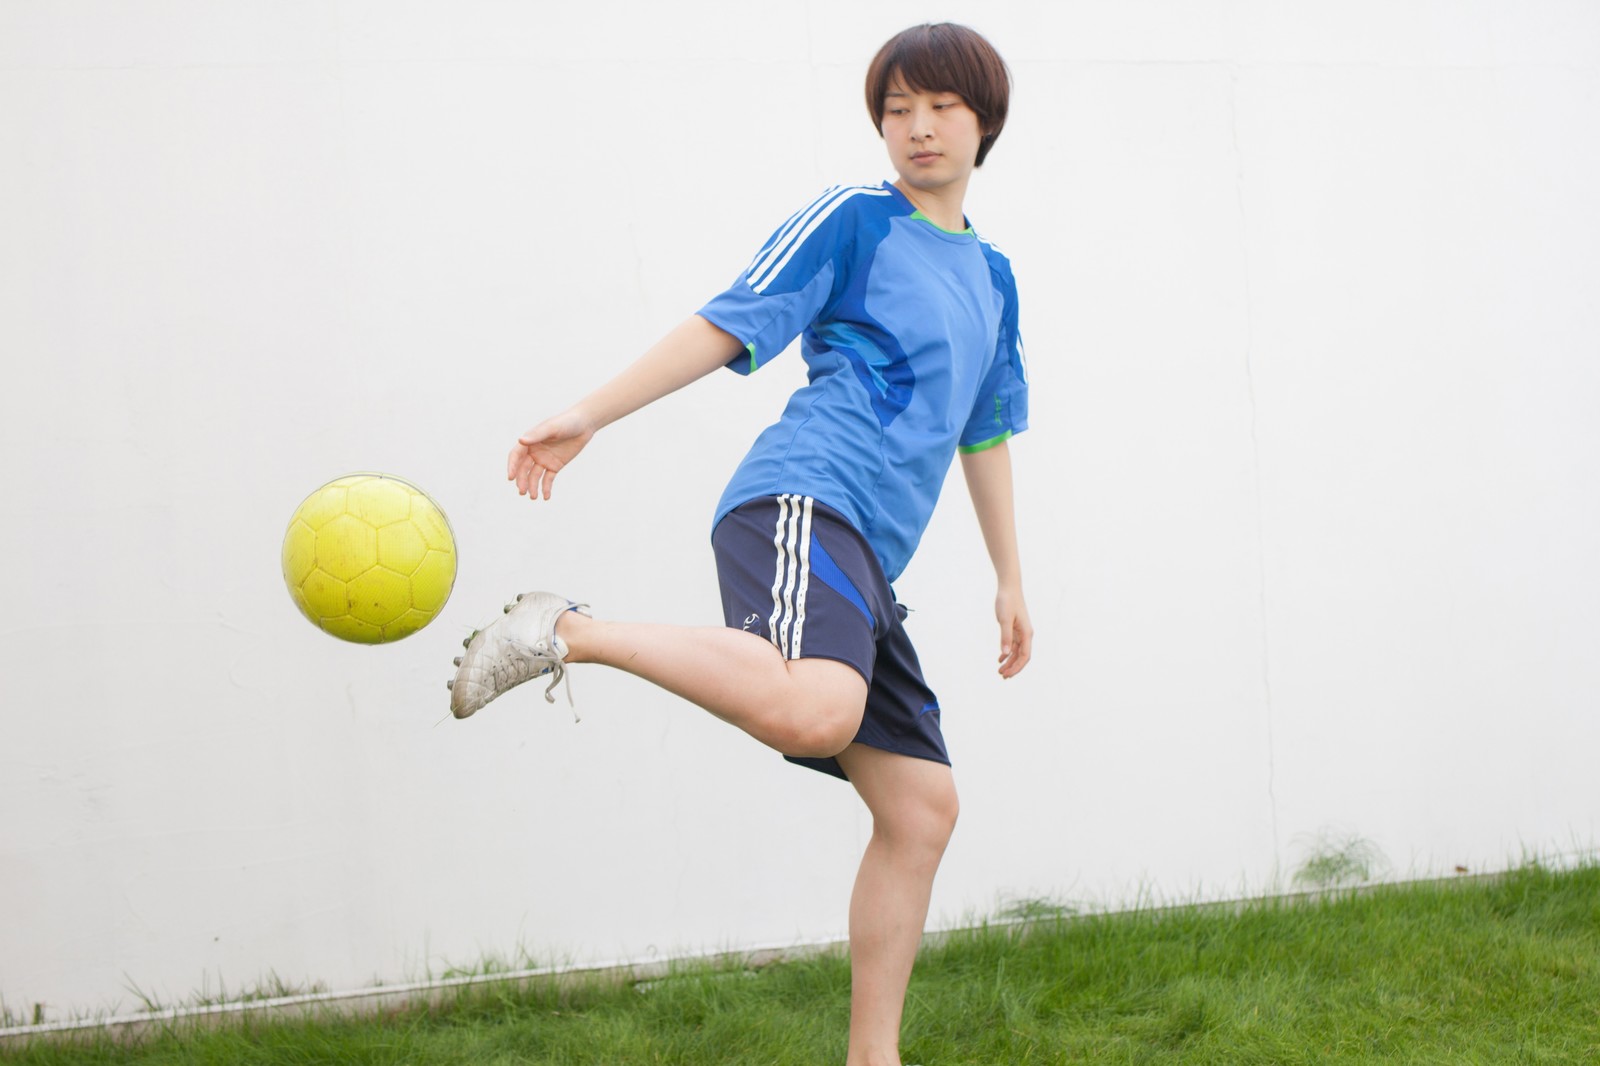 平愛梨さんとのゴールを決めたアモーレ長友佑都選手に学ぶ 合コンでモテる男になるために重要な4つの行動学